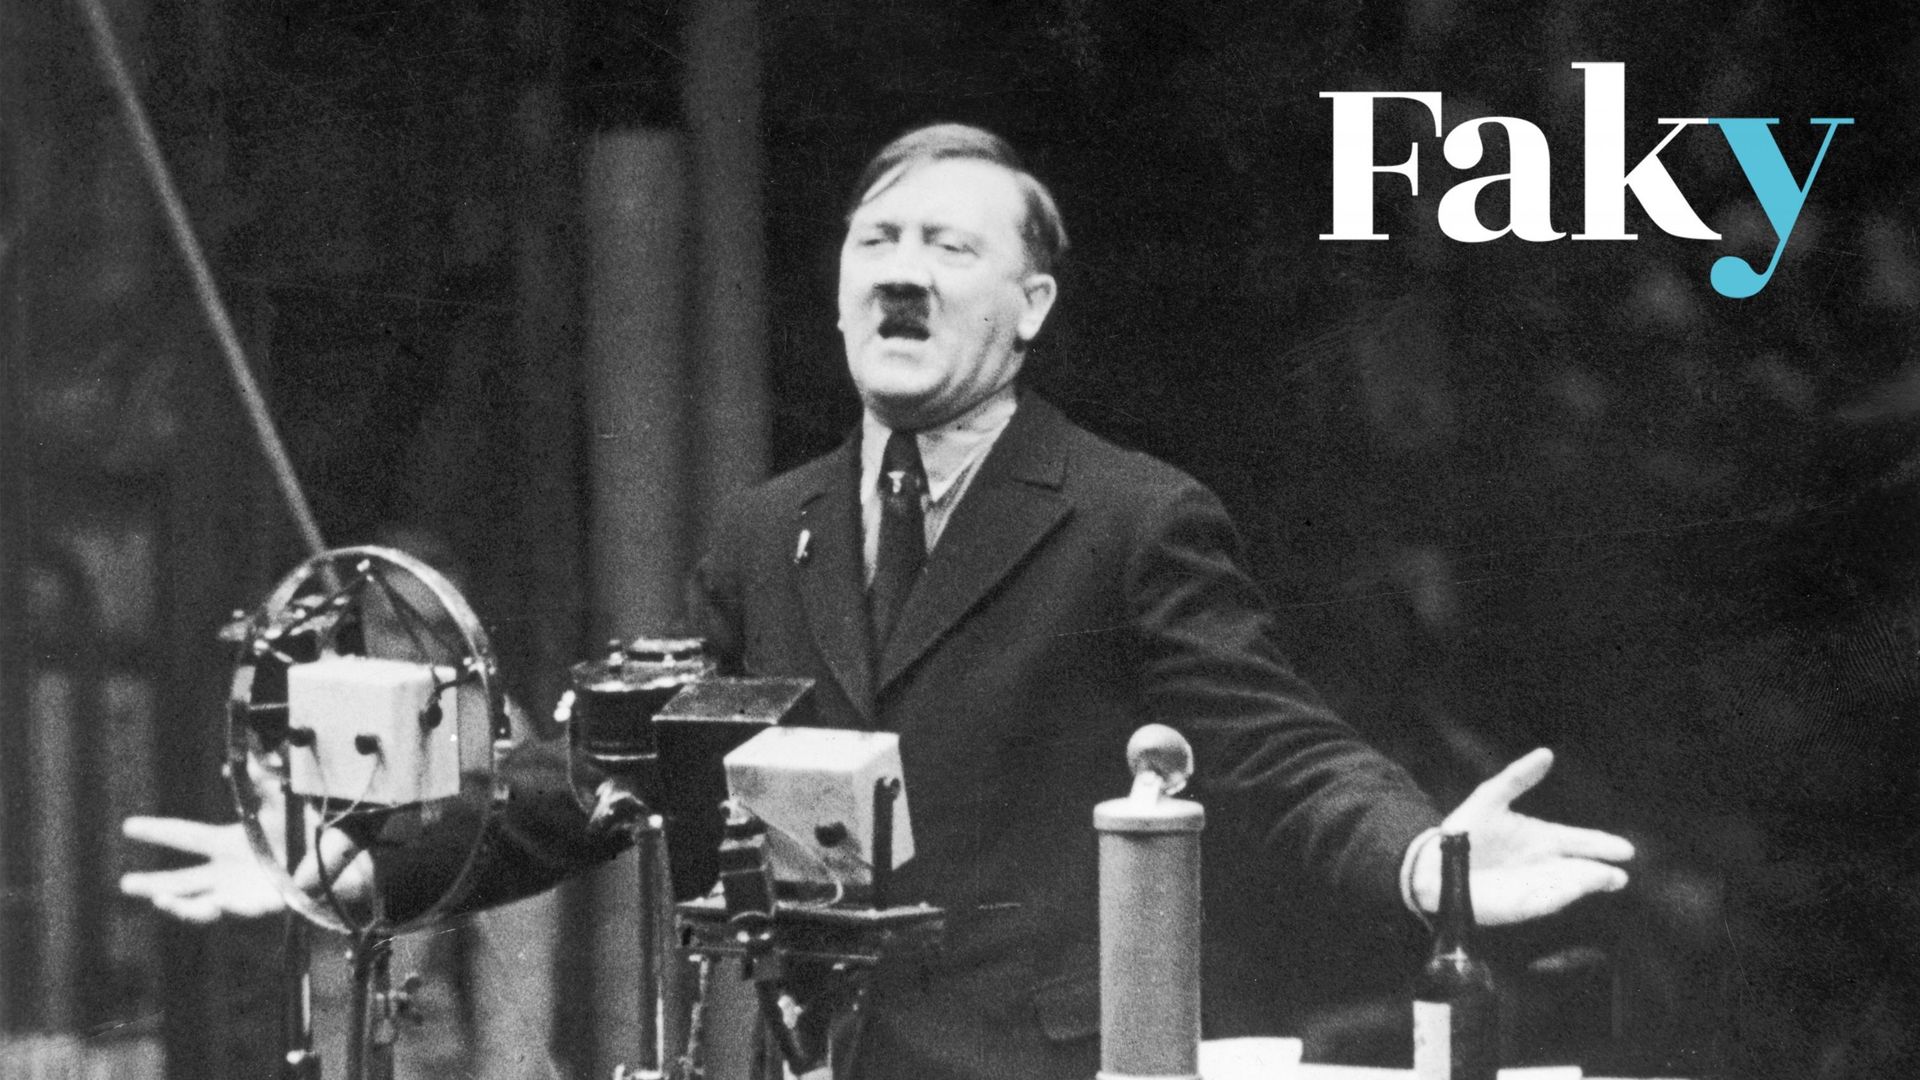 1935 : Le leader nazi Adolf Hitler parle devant des microphones et fait des gestes avec ses mains. Publication originale : Extrait du film d’actualités "La marche du temps". (Photo par Hulton Archive/Getty Images)